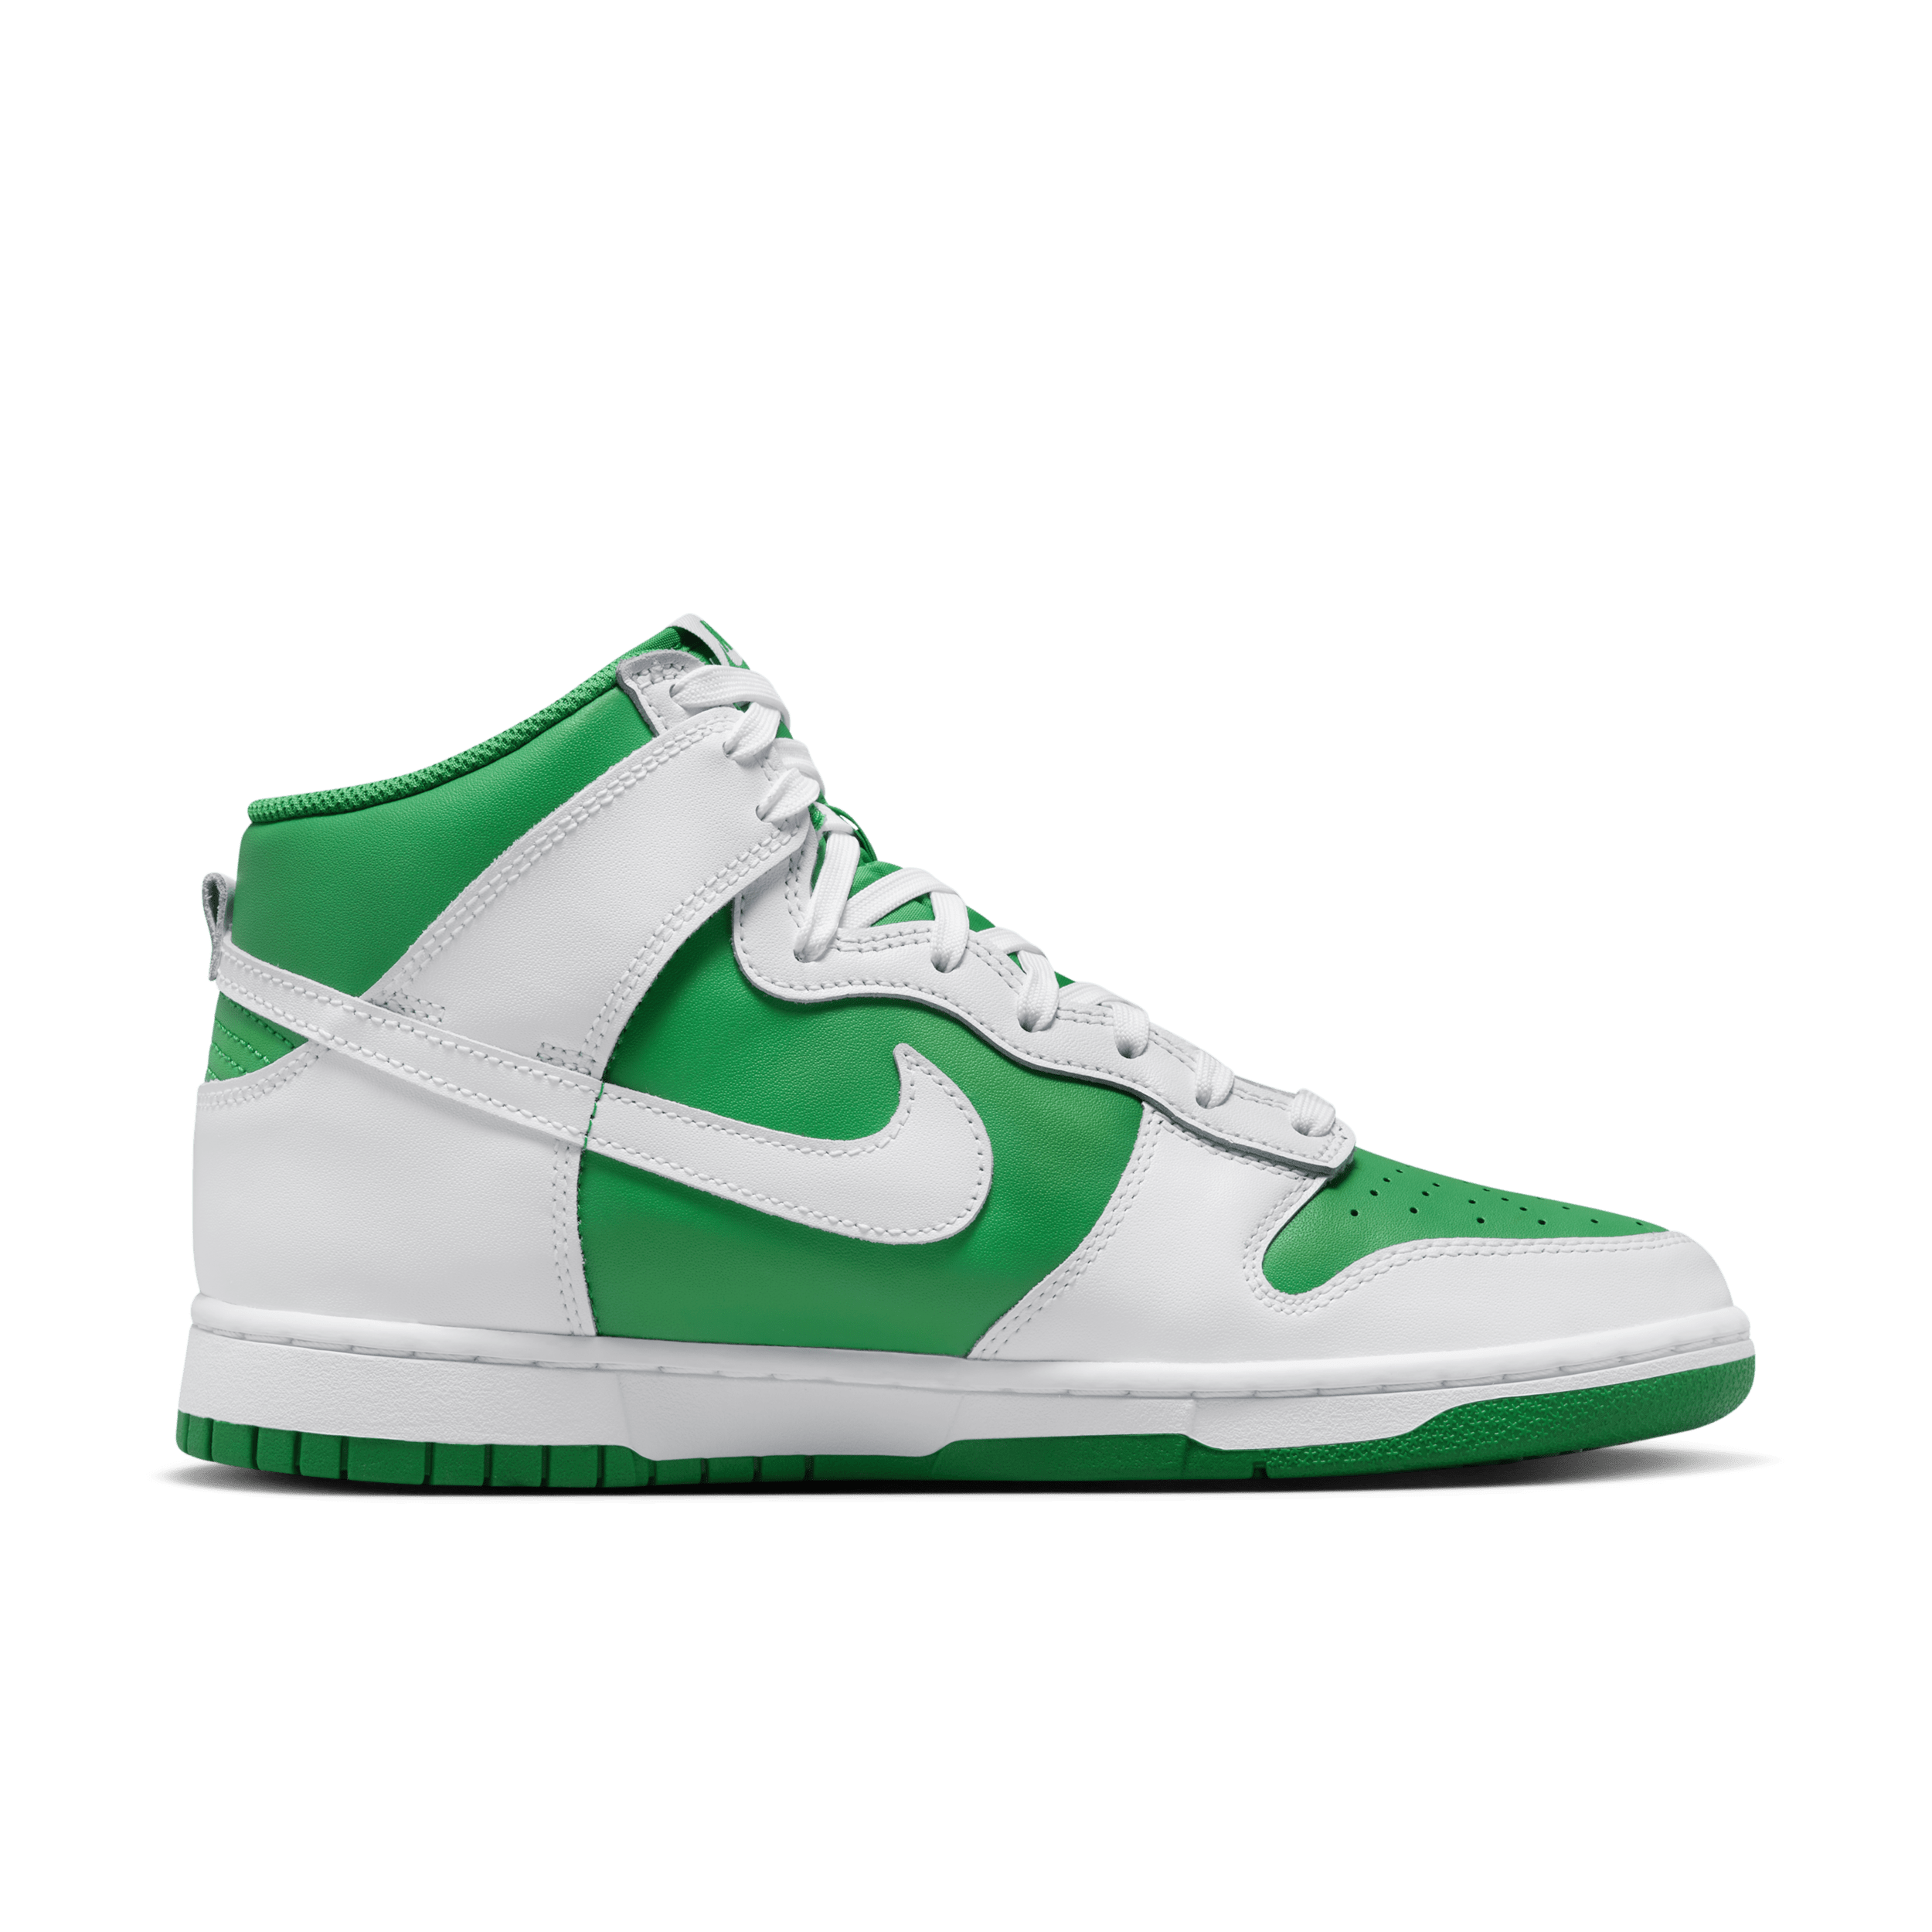 Nike Dunk High Retro Herrenschuh - Grün